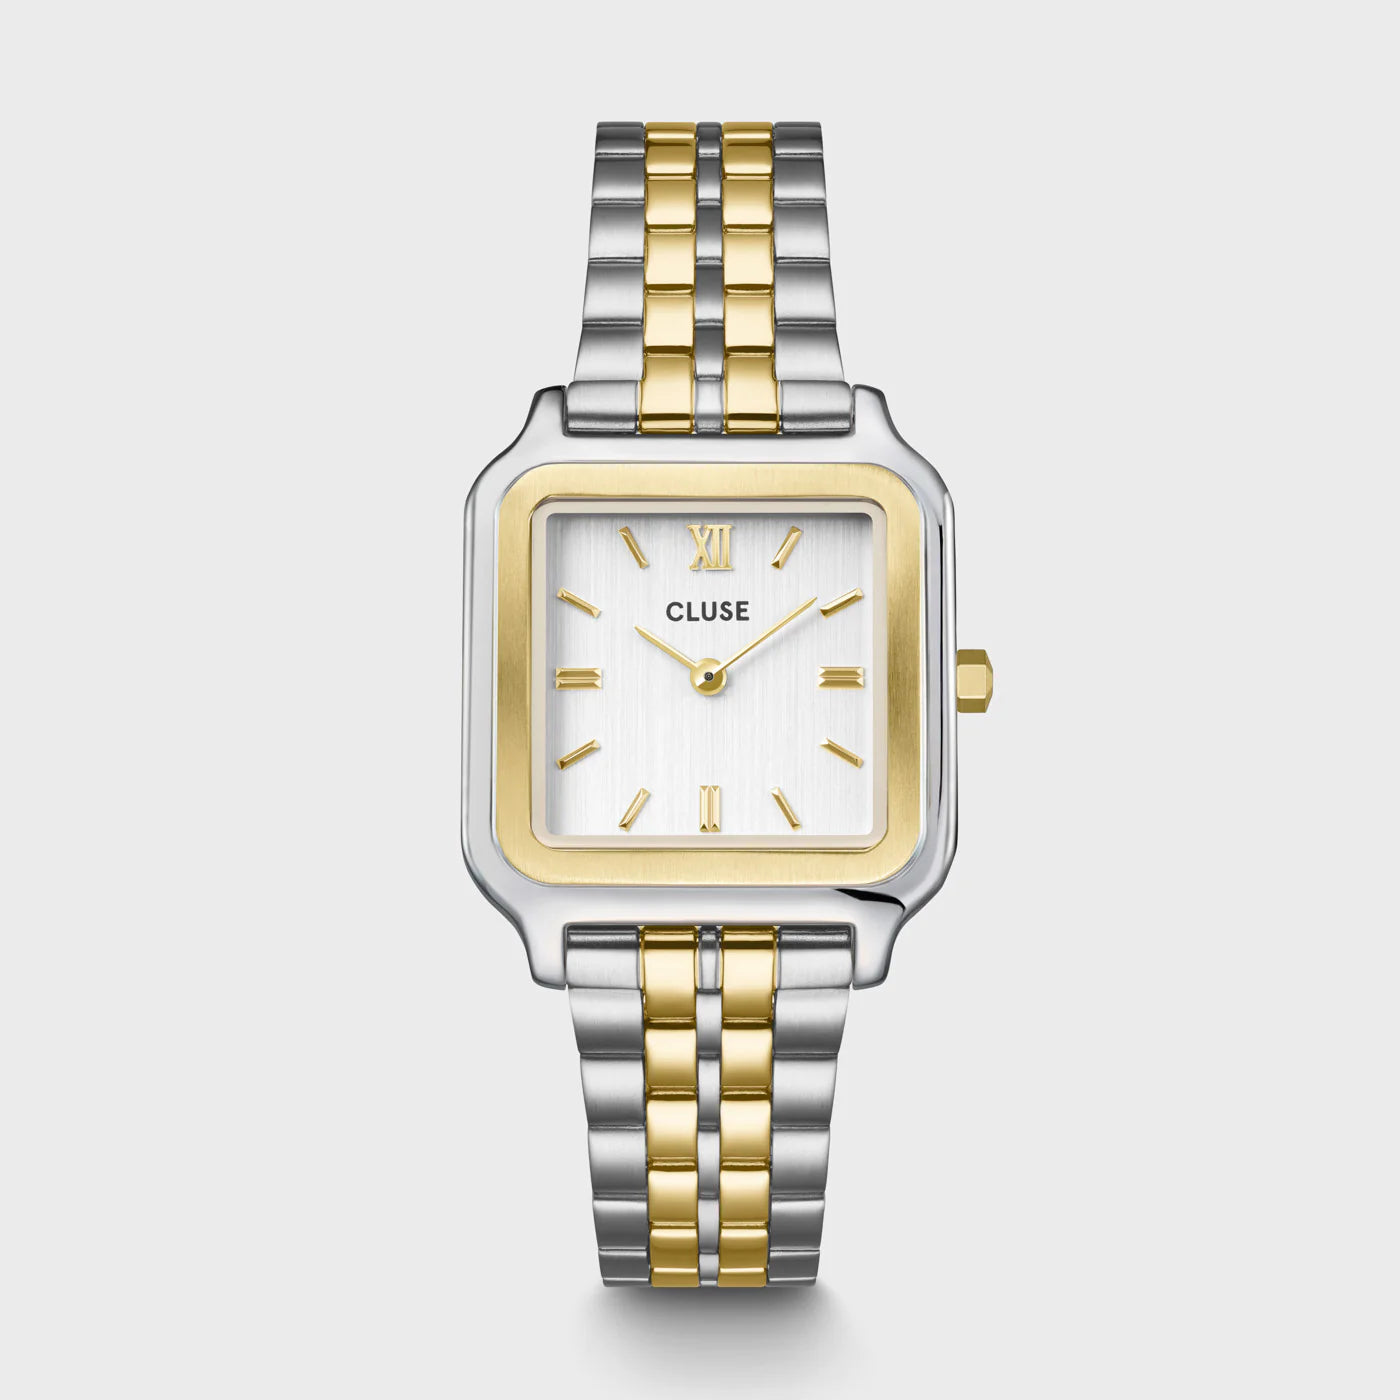  Frontale Ansicht der Cluse Stahl-Uhr "Gracieuse" in Stahl-Gold-Optik (bicolor) mit weißem Zifferblatt